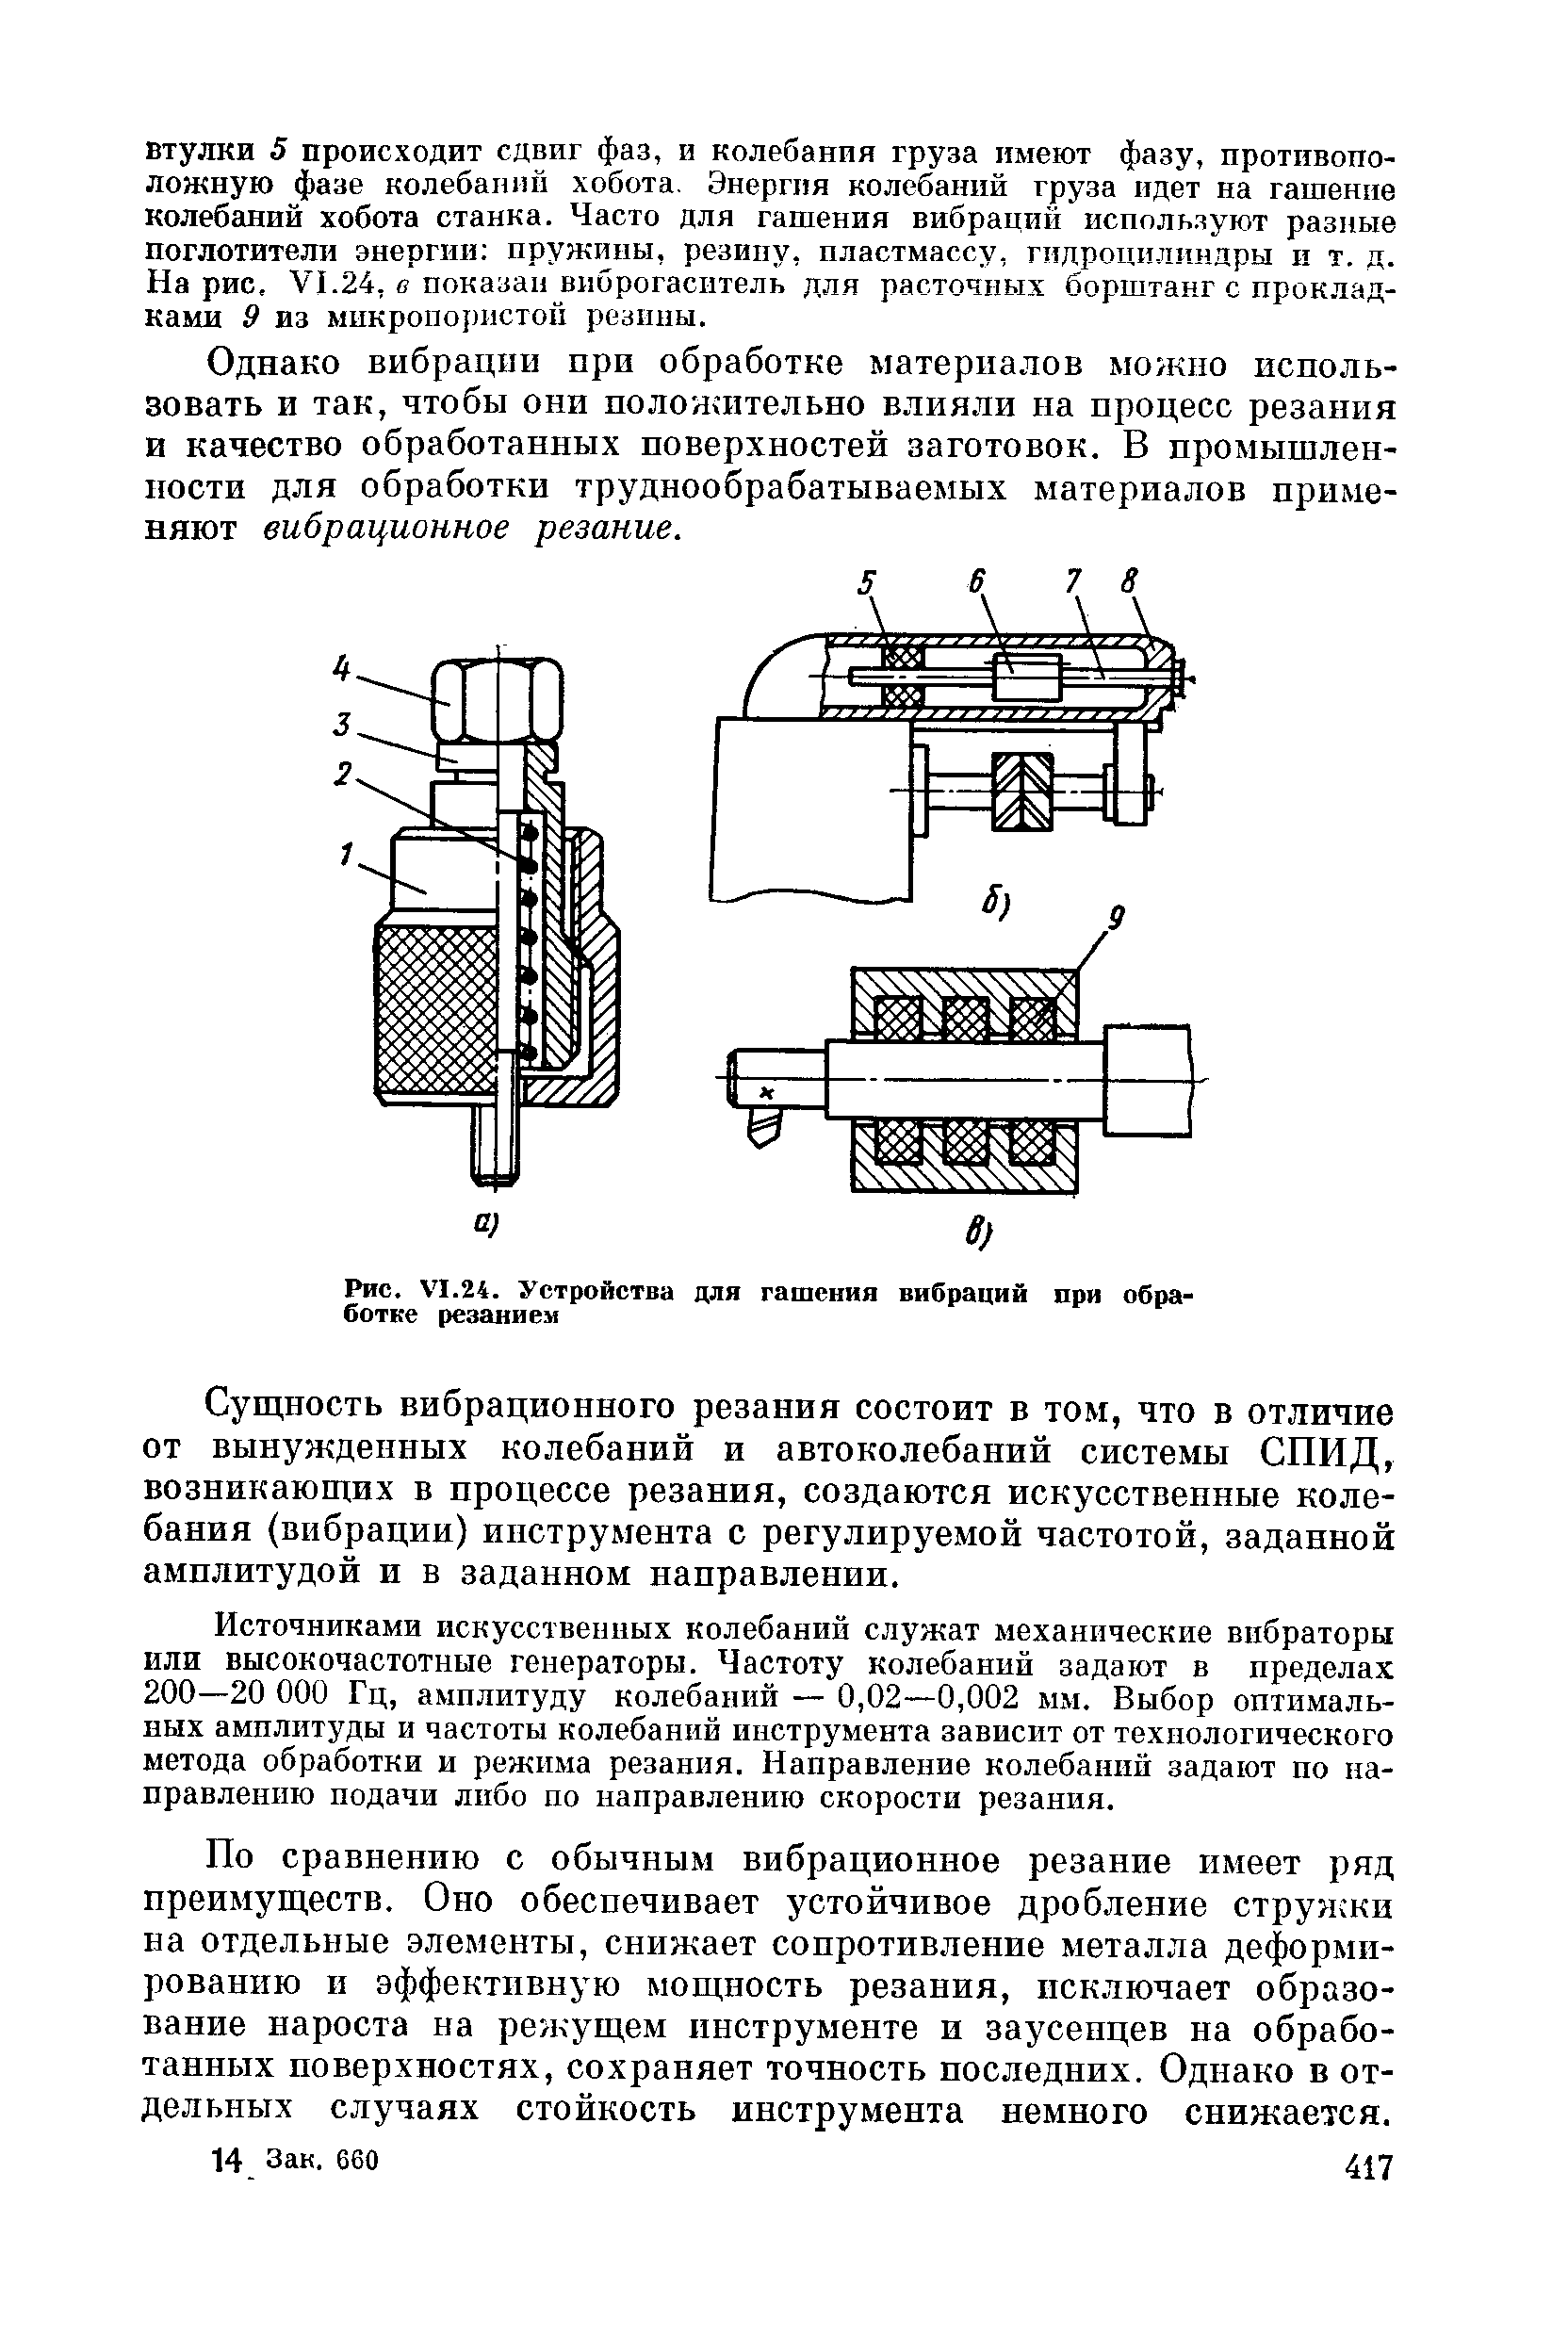 Рис. VI.24. Устройства для гашения вибраций при обработке резанием
